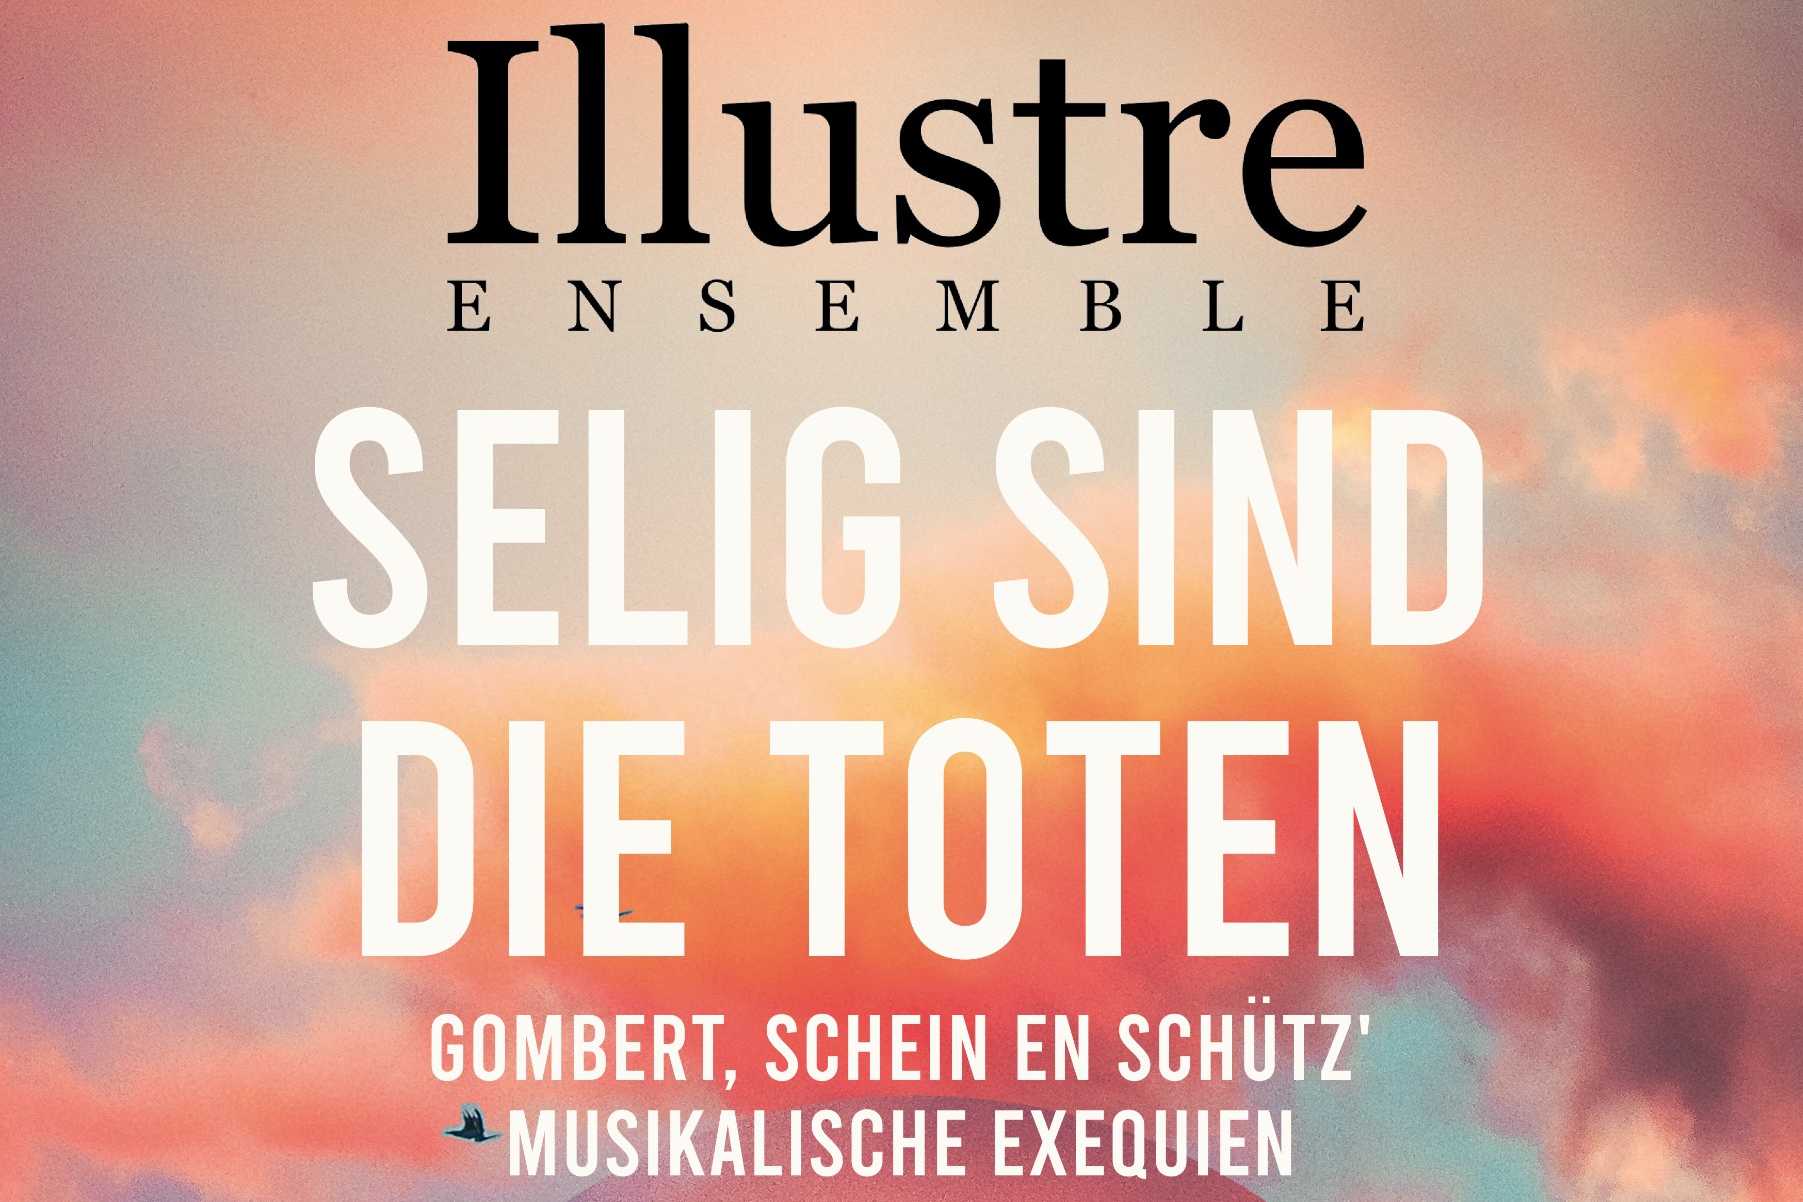 Poster concert Ensemble Illustre (detail)